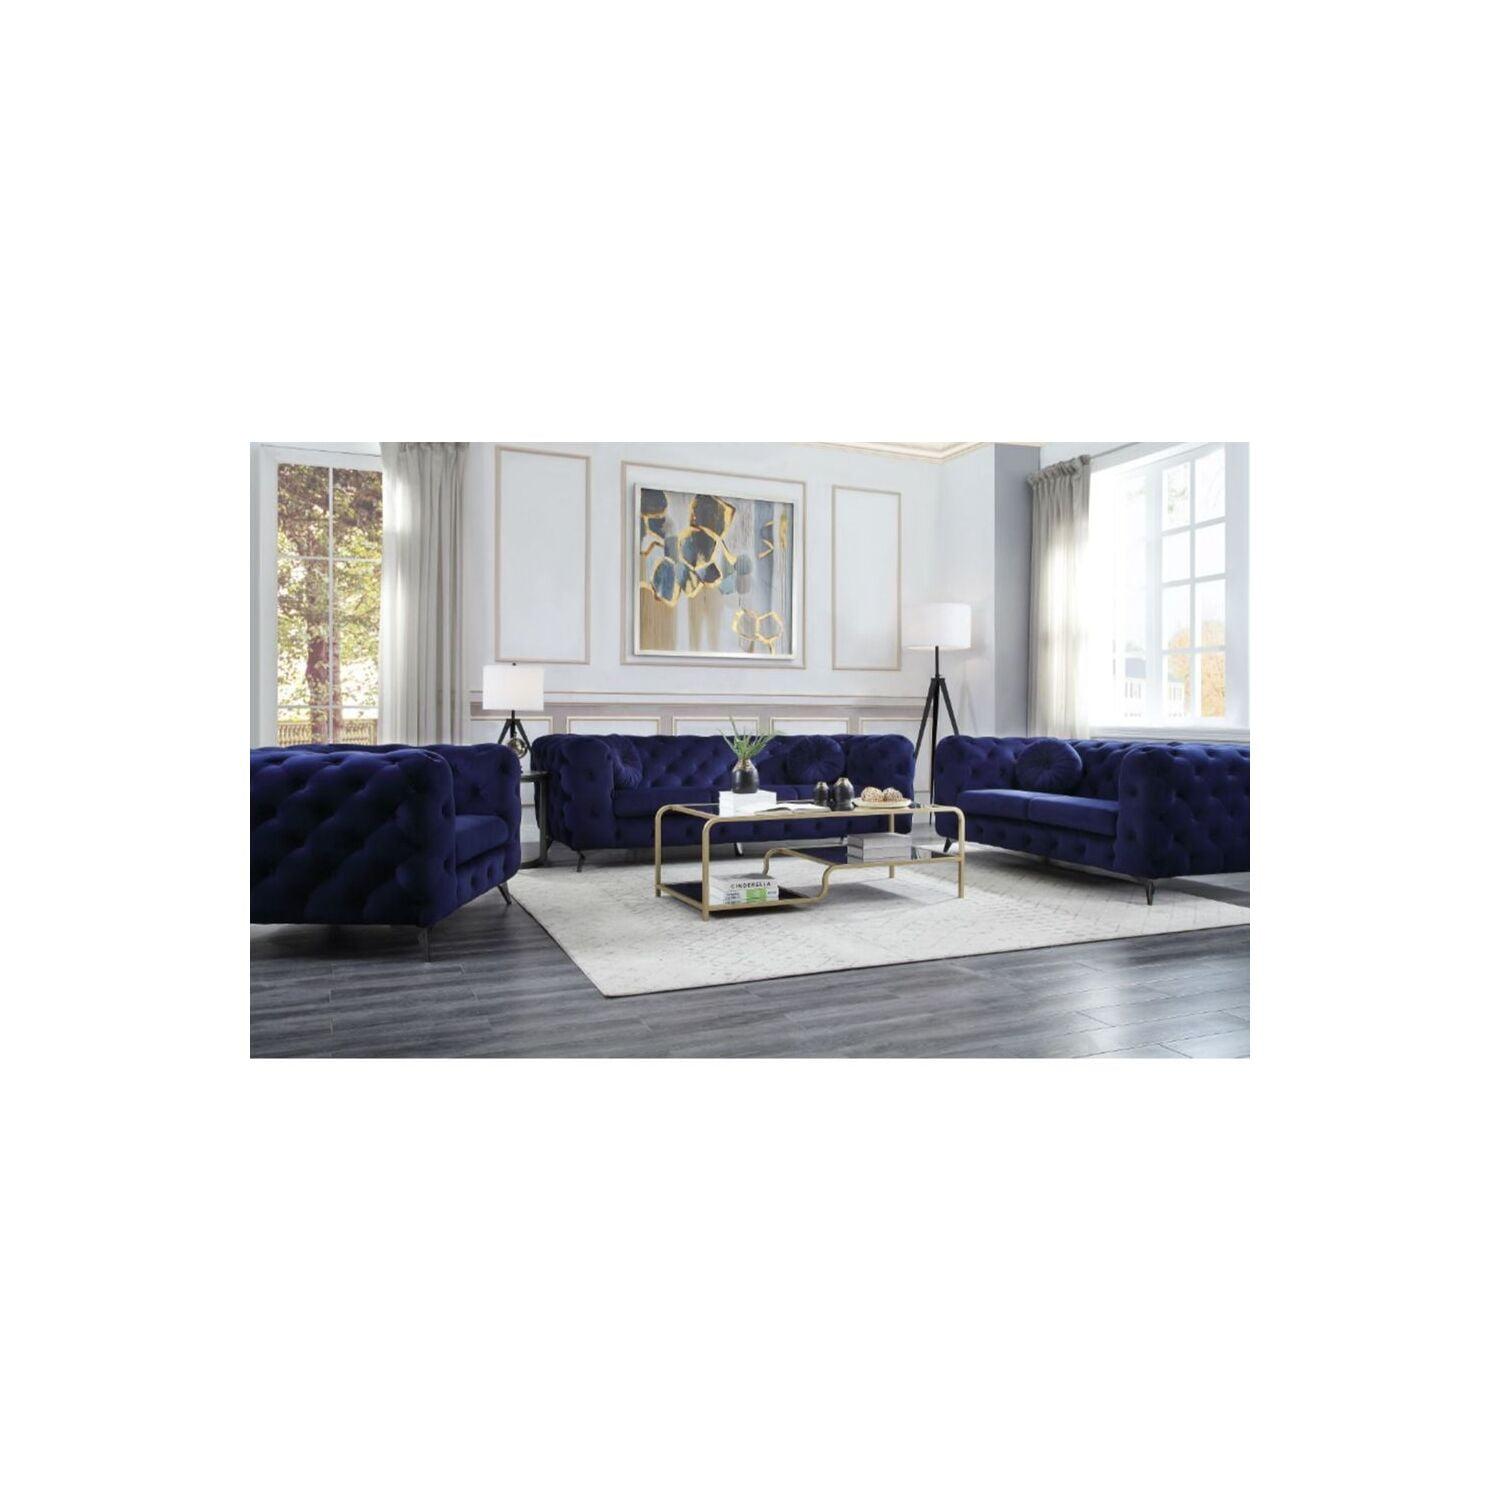 Elegant Blue Velvet Tufted Sofa with Chrome Legs, 86 in